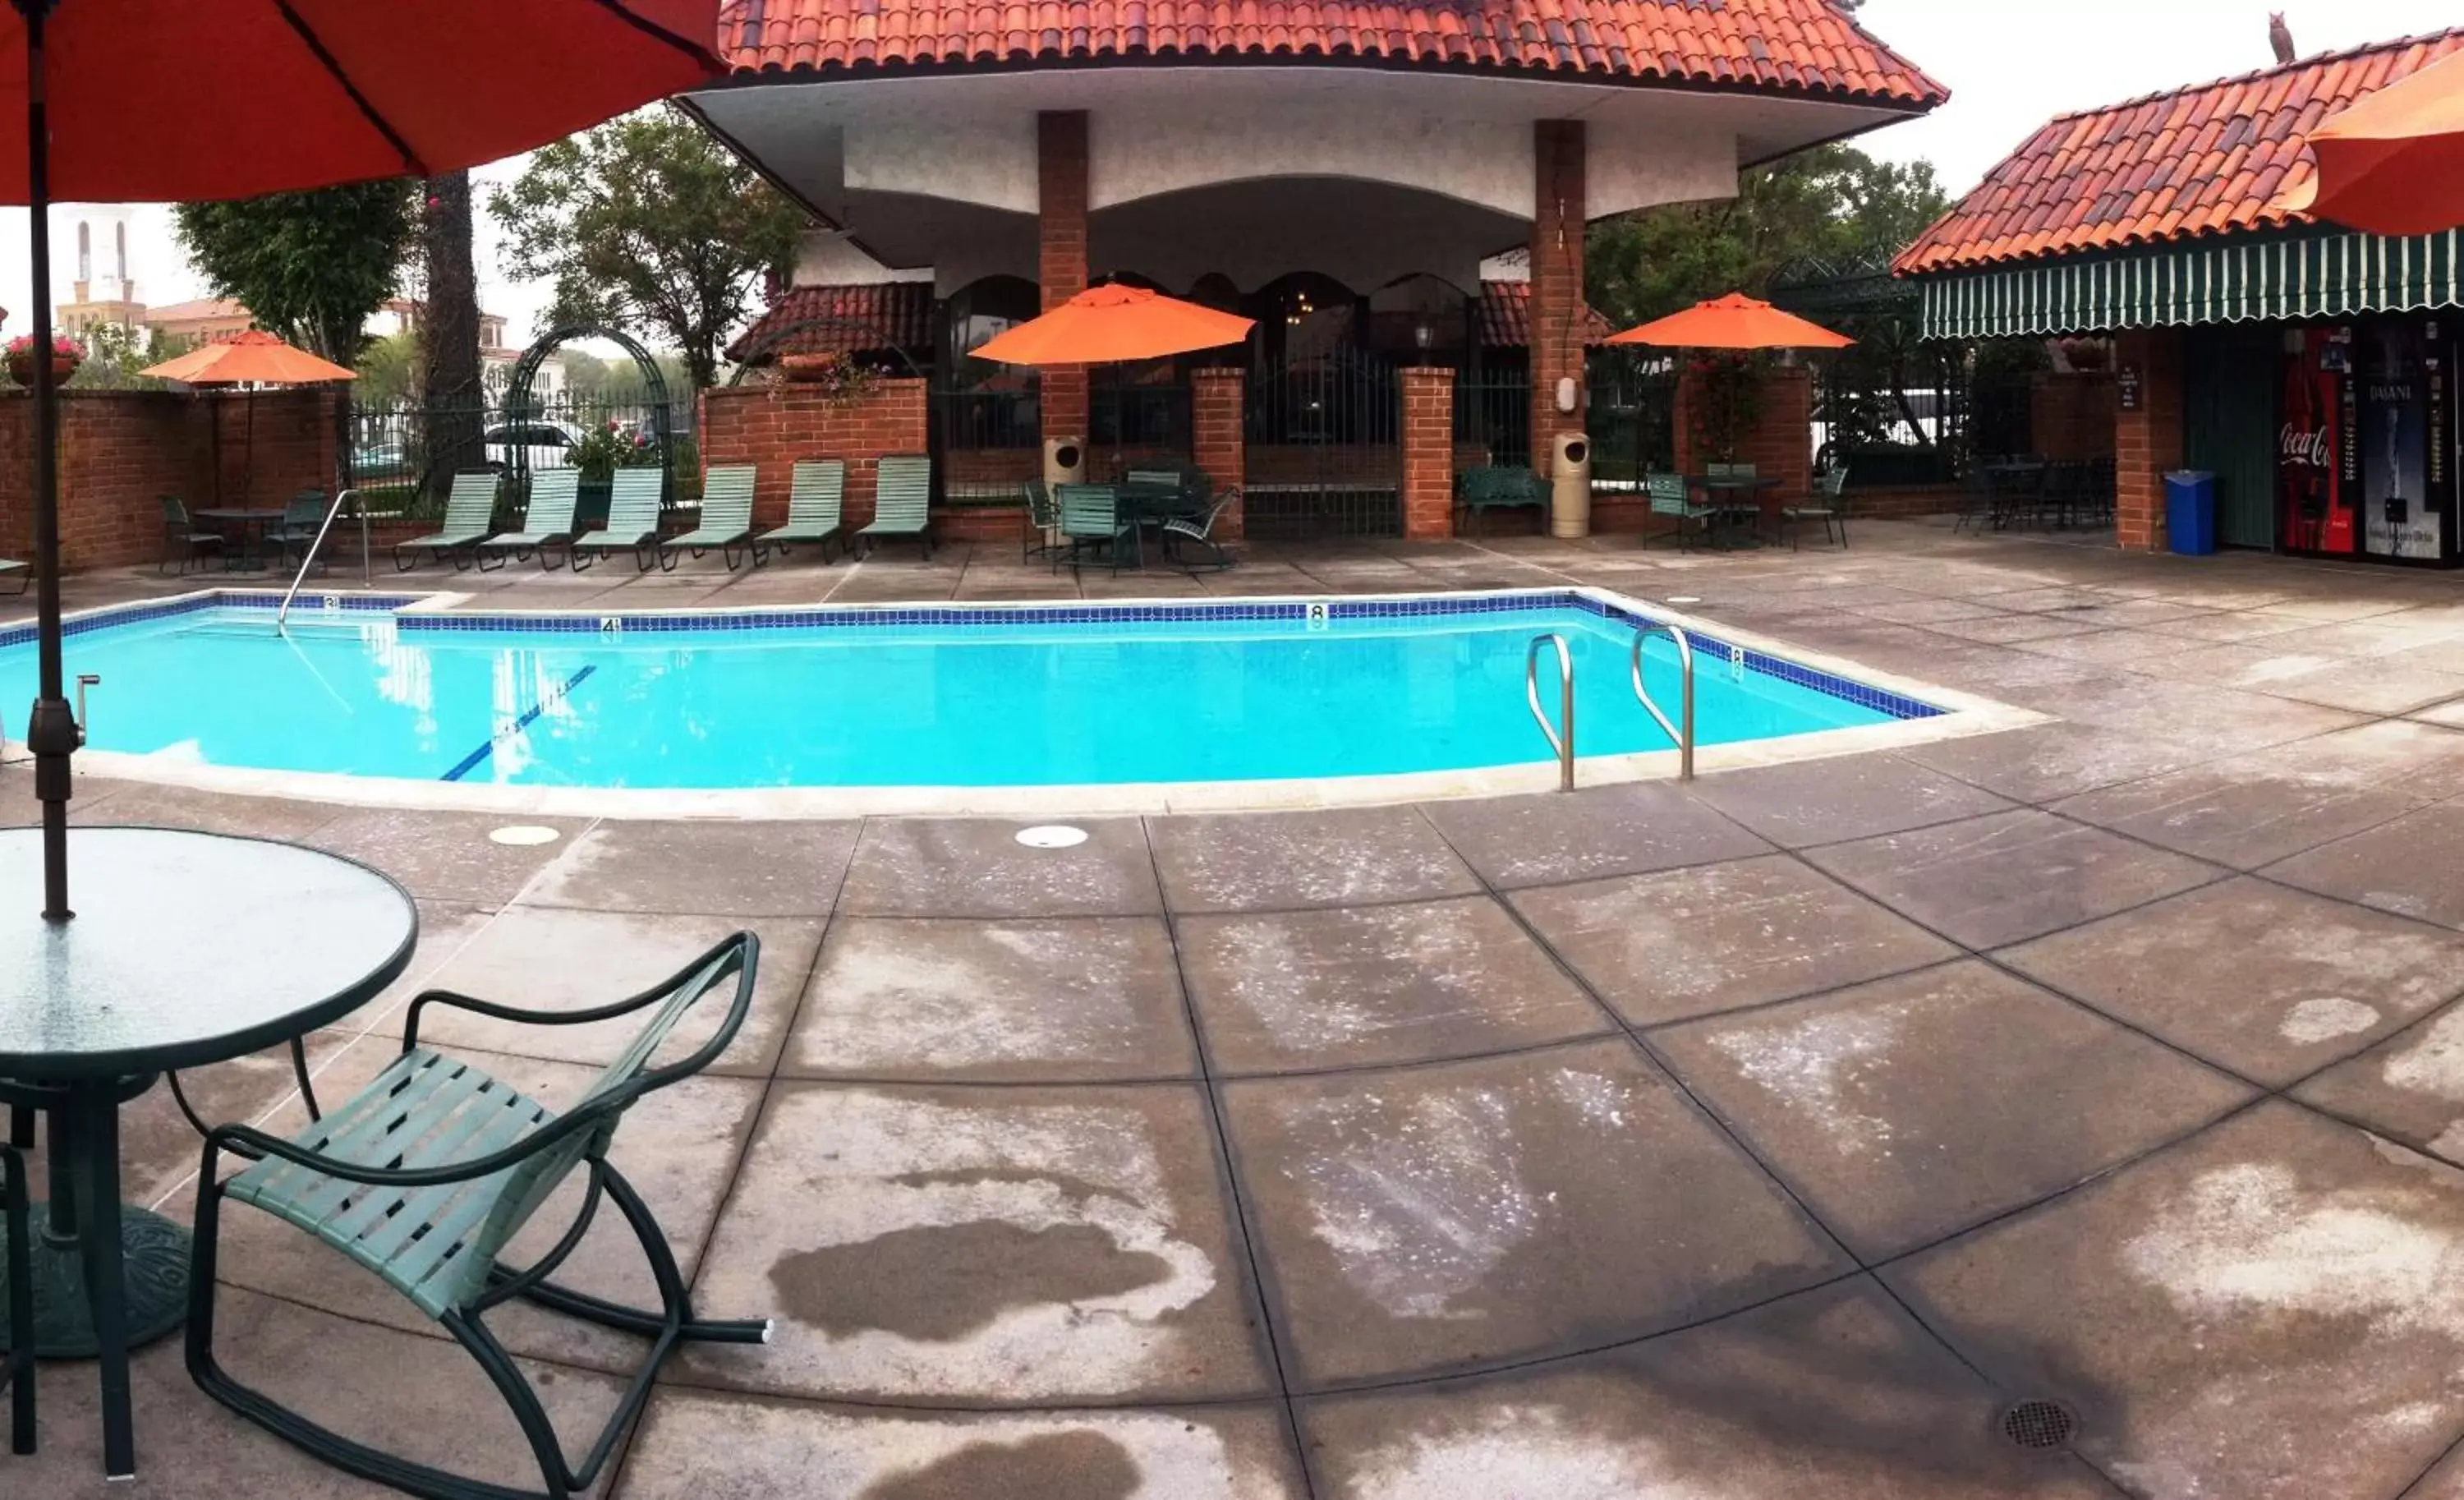 Swimming Pool in Laguna Hills Lodge-Irvine Spectrum